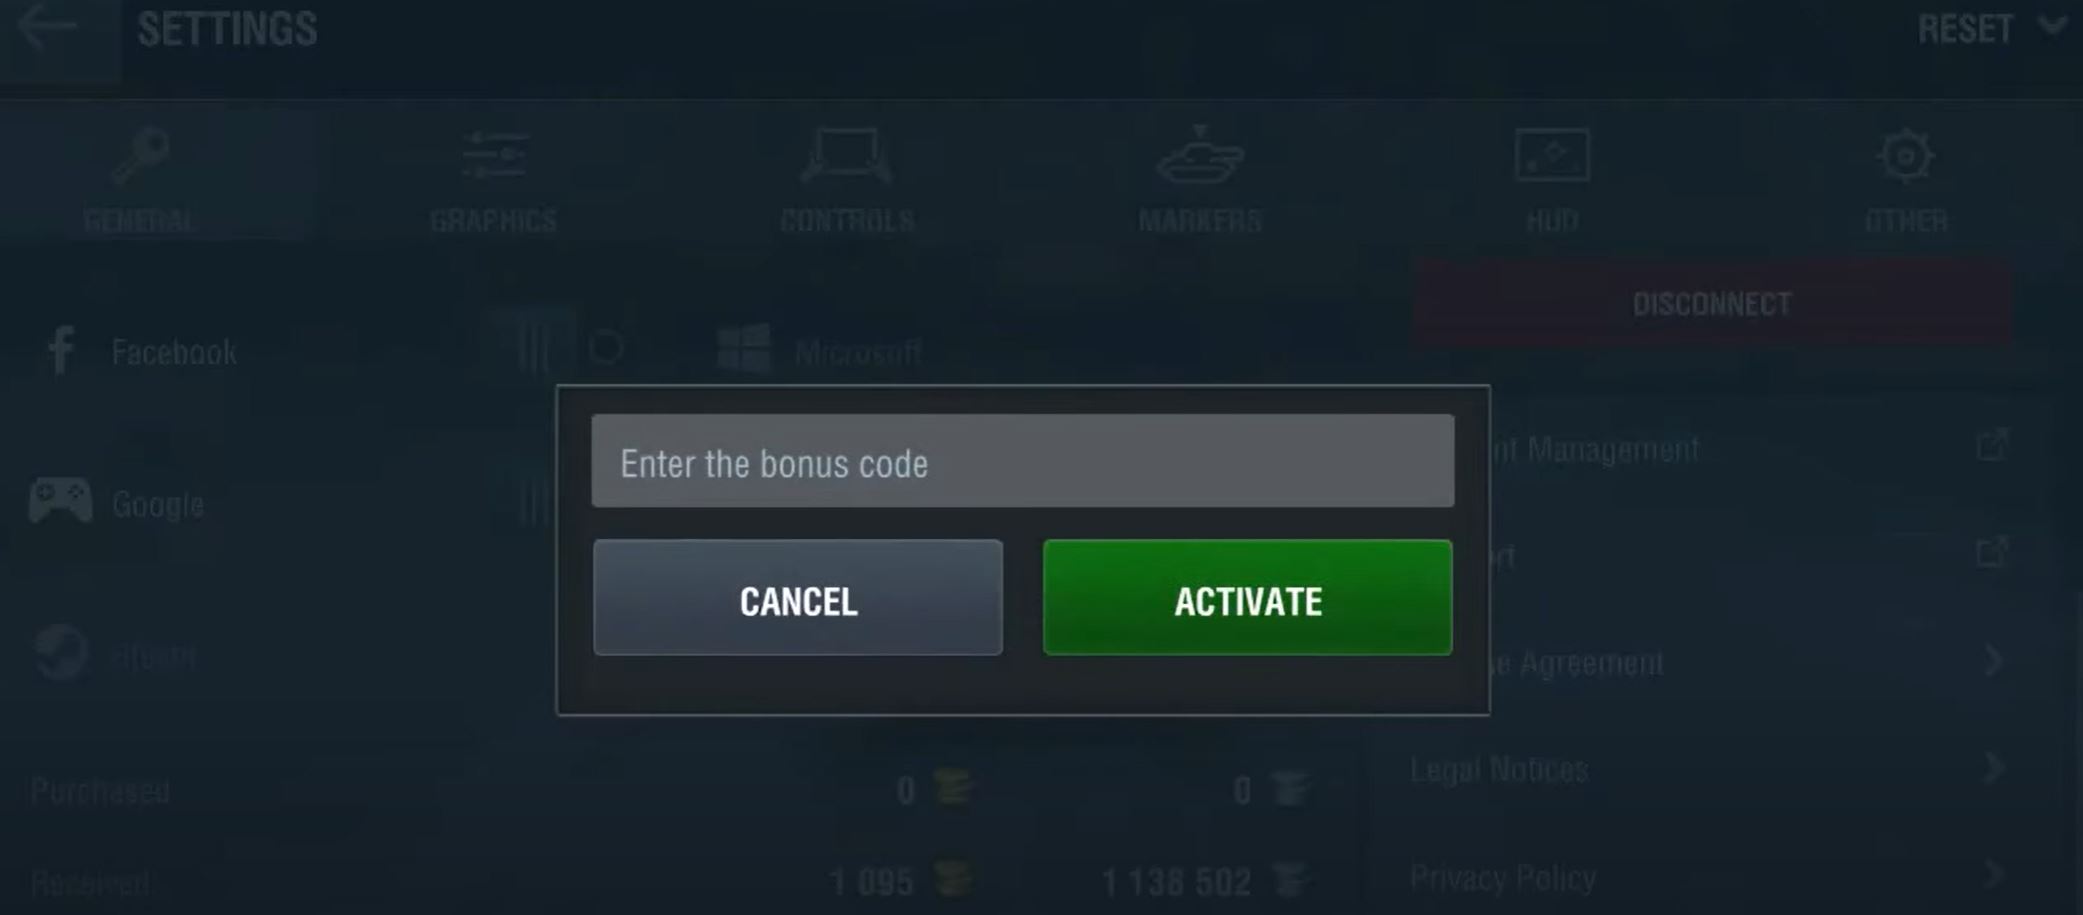 Nhập mã code vào ô Enter Bonus Code và nhấn Activate.